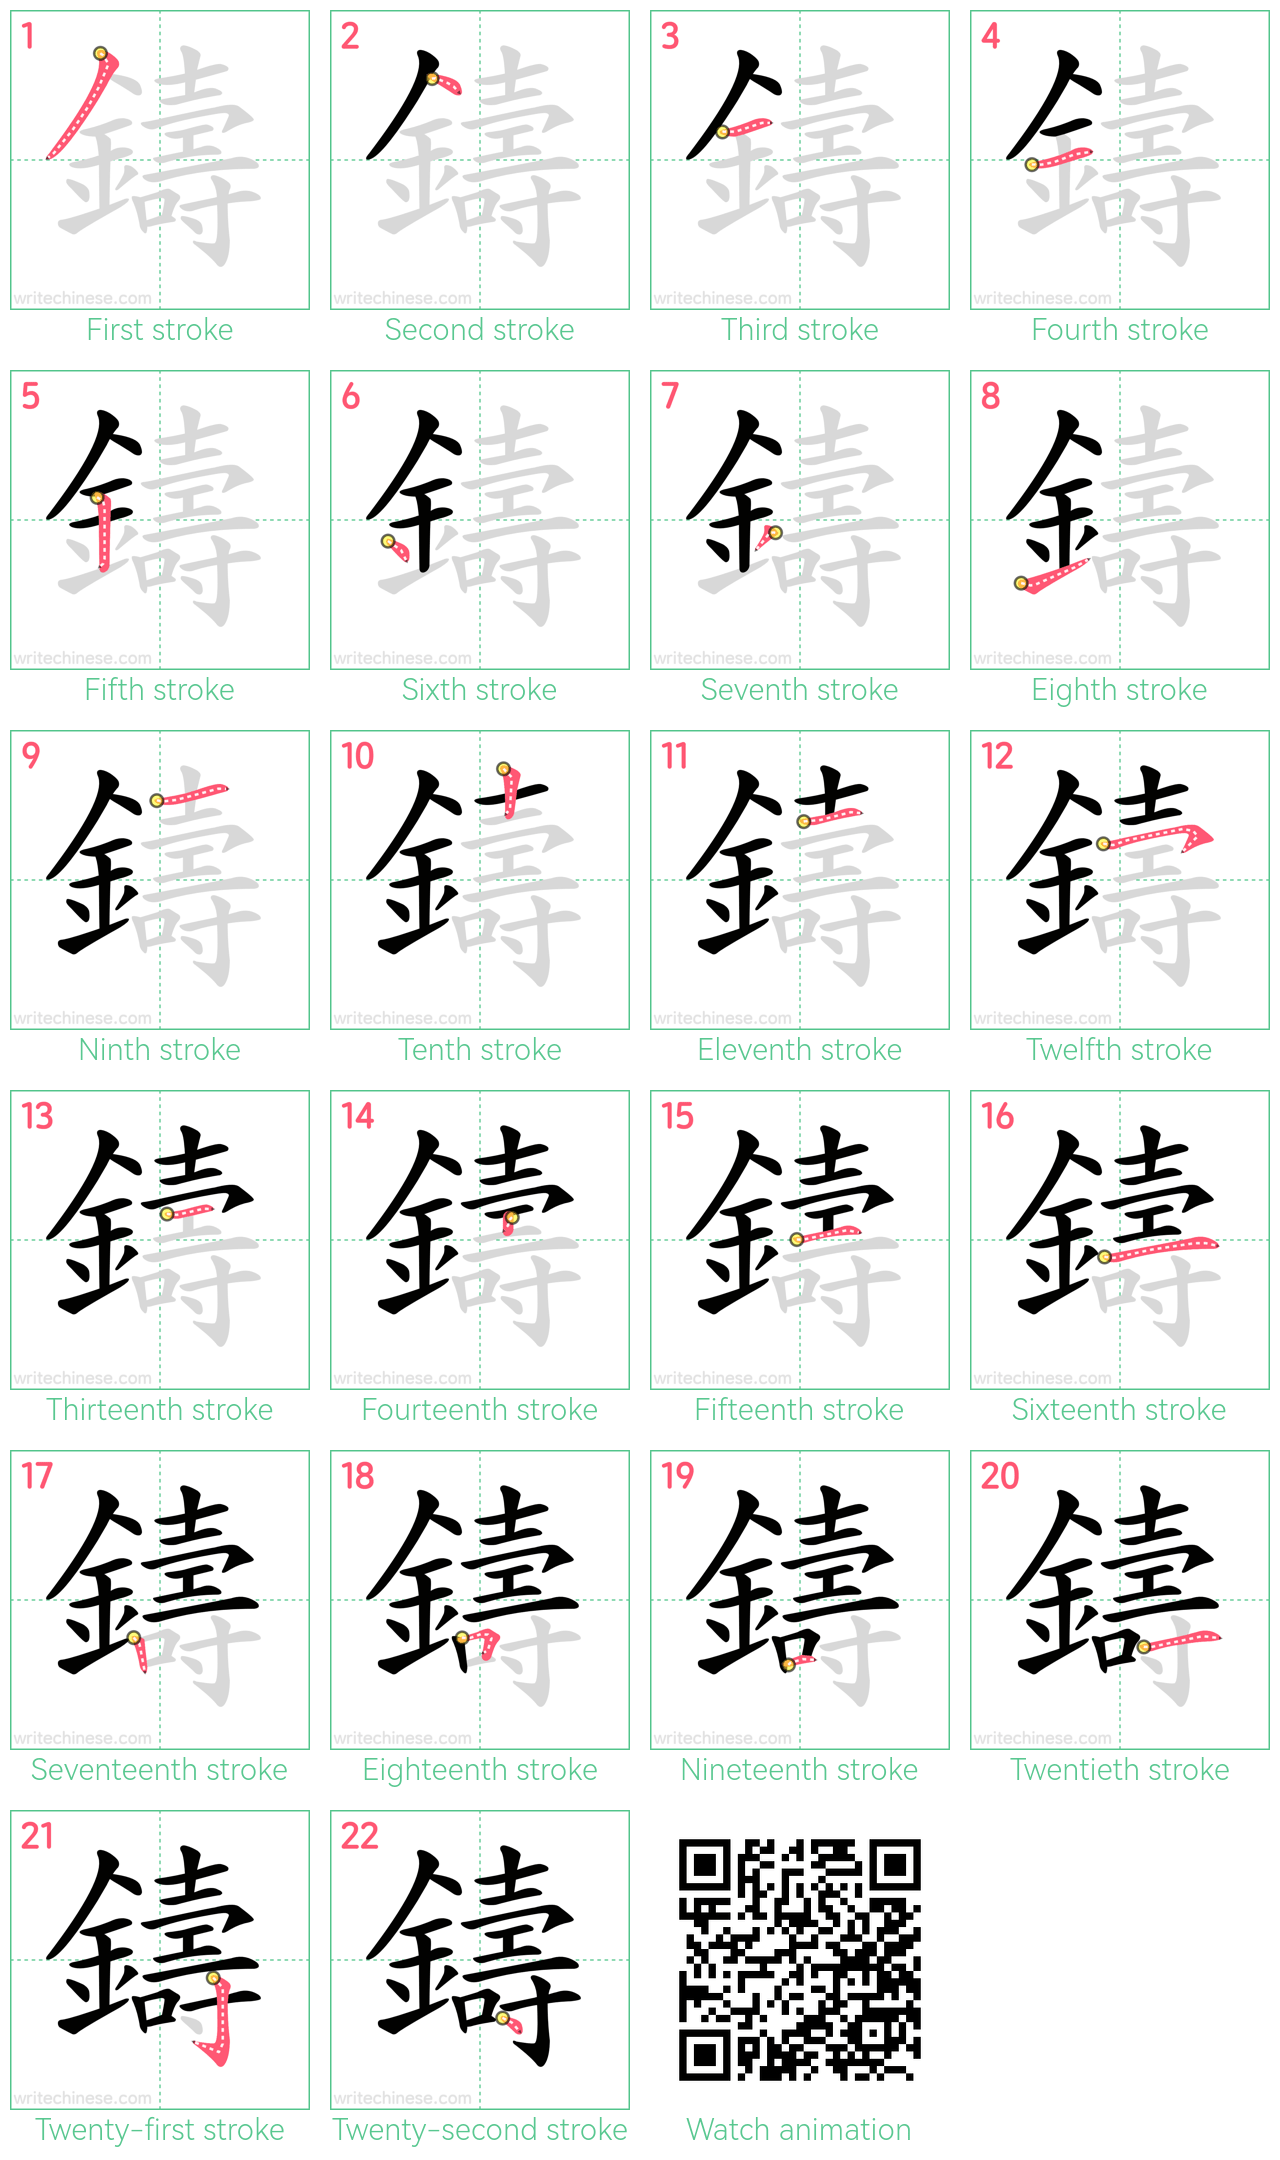 鑄 step-by-step stroke order diagrams